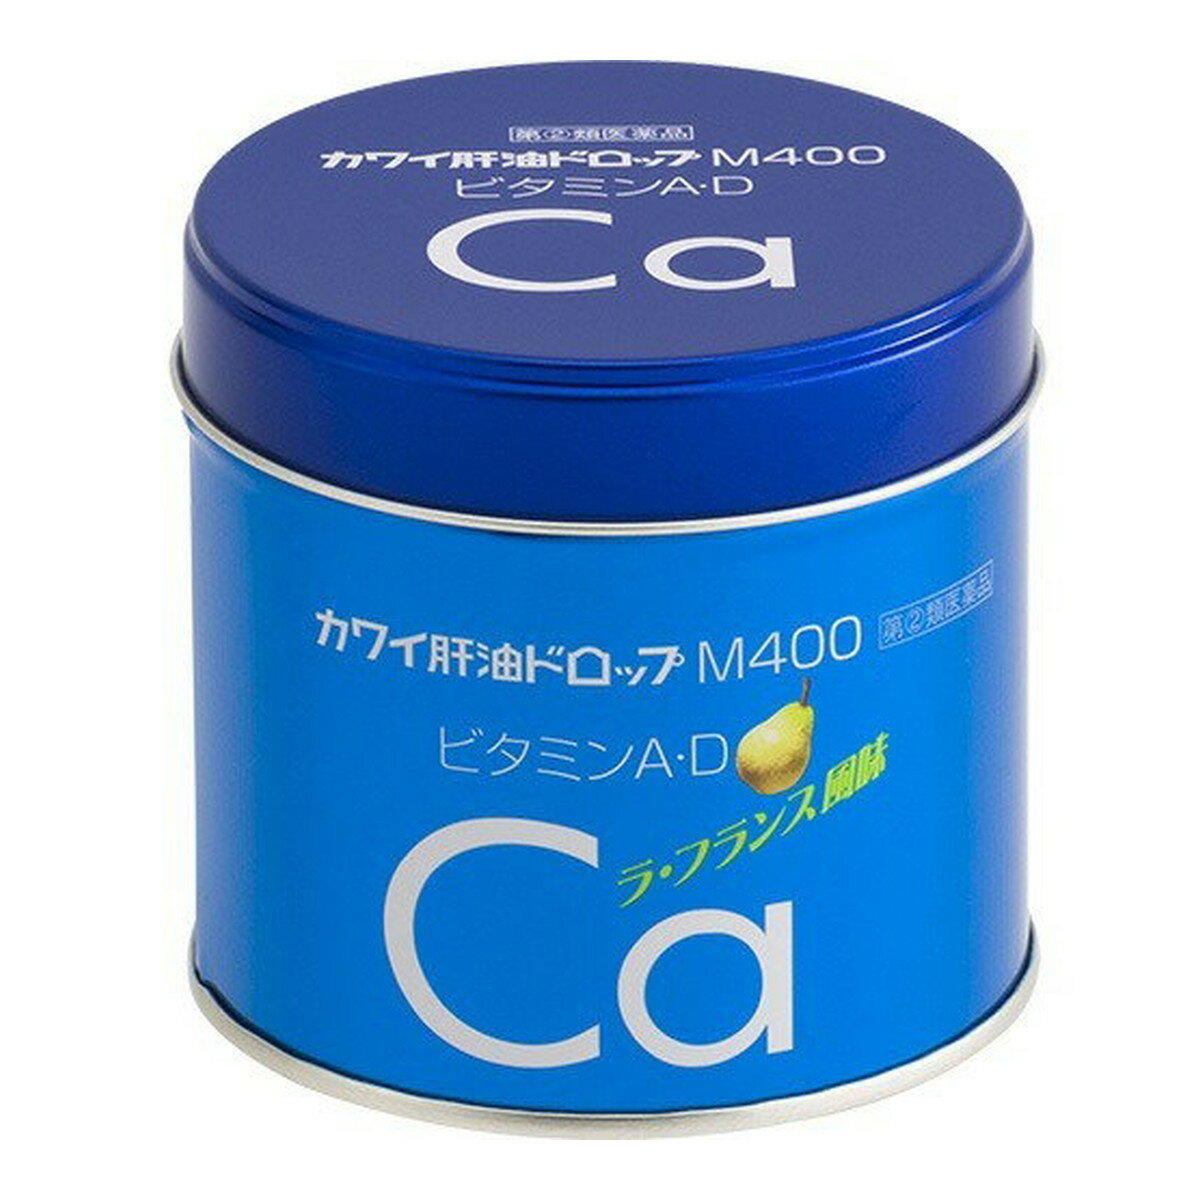 【第 2 類医薬品】河合製薬 カワイ肝油ドロップM400 ビタミンAD カルシウム配合 180粒入